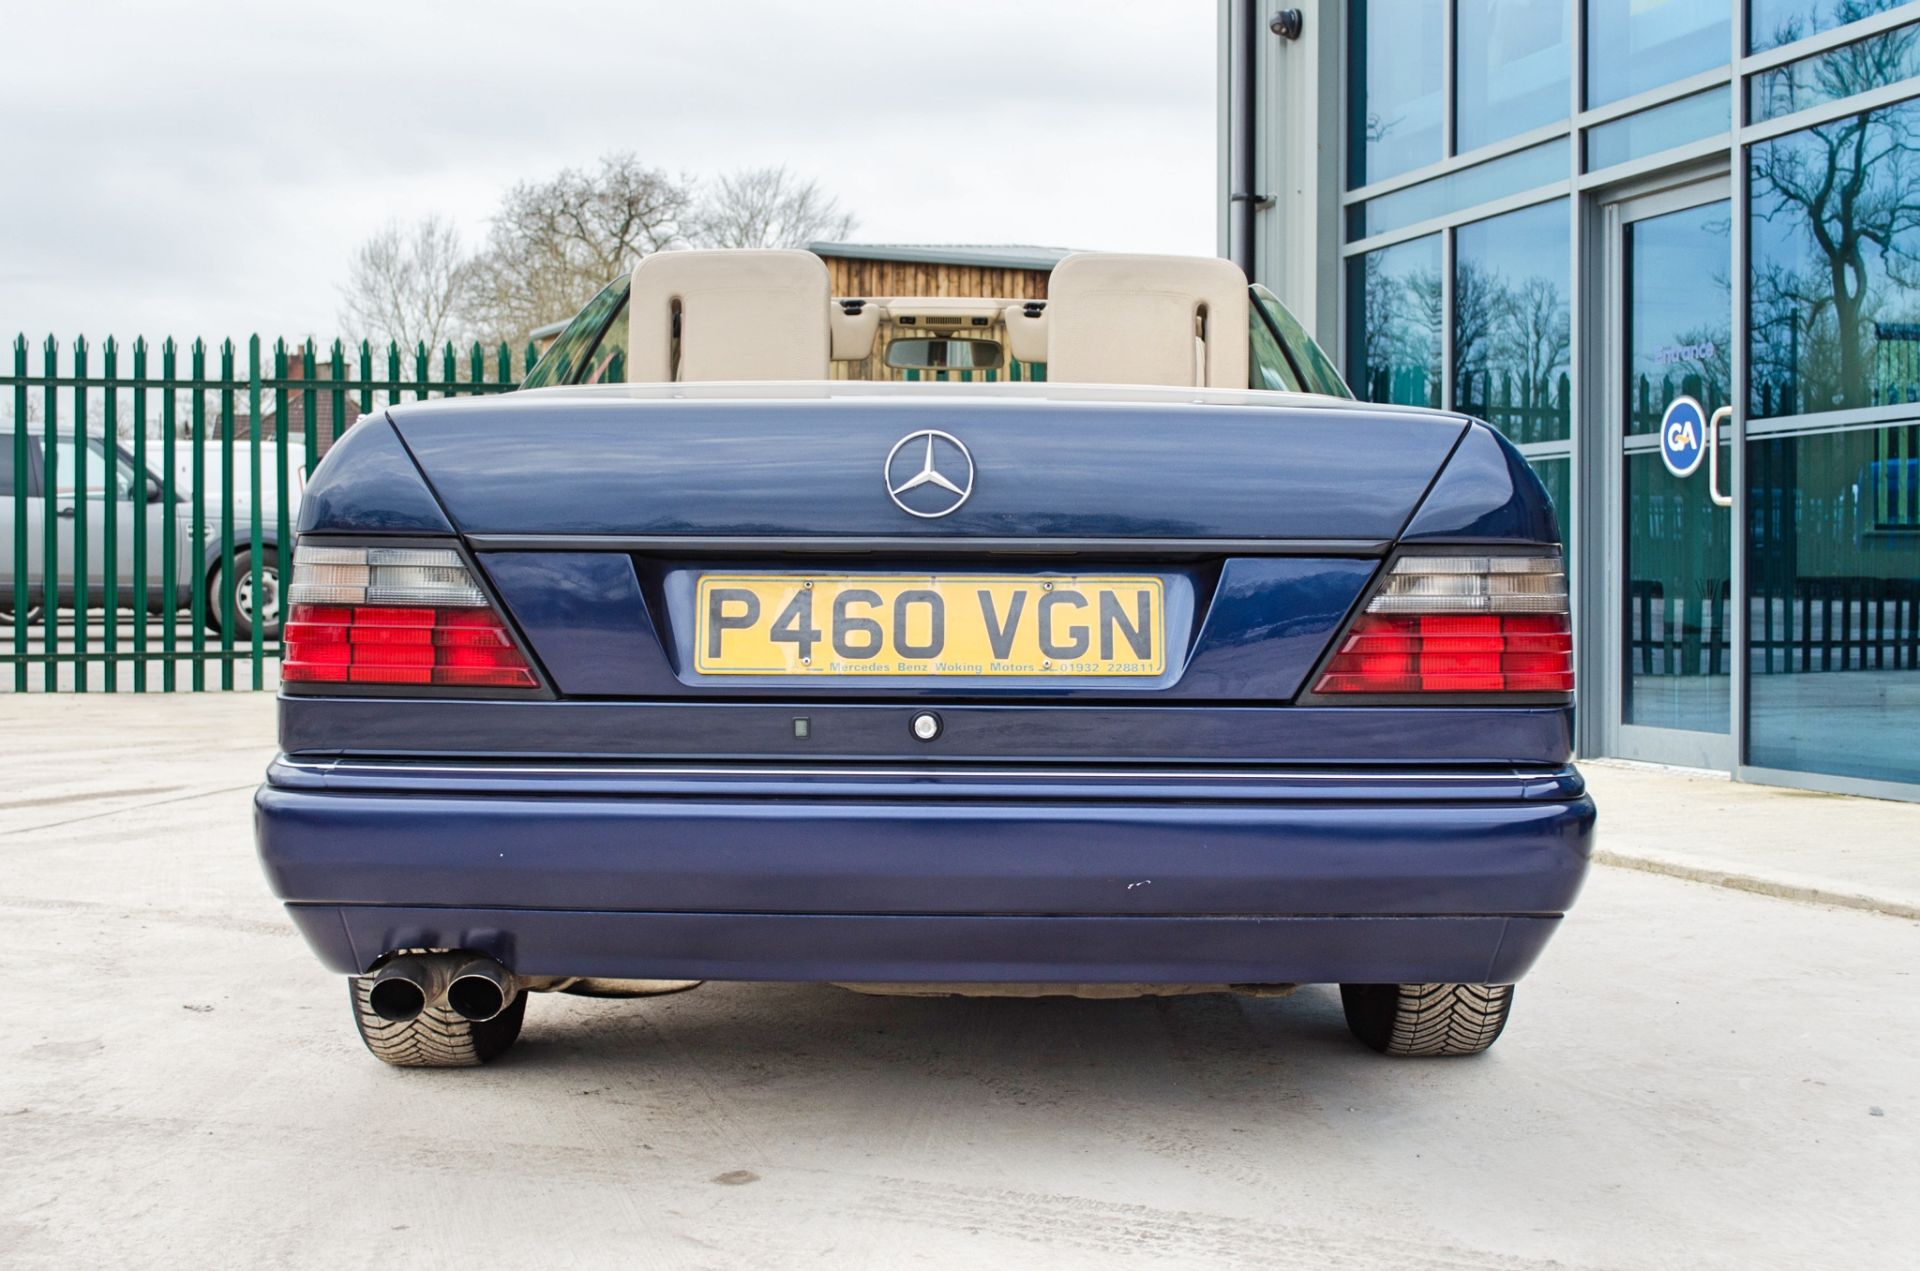 1997 Mercedes E220 2.2 litre 2 door cabriolet Registration: P460VGN Chassis: WDB1240622C292059 - Image 11 of 60